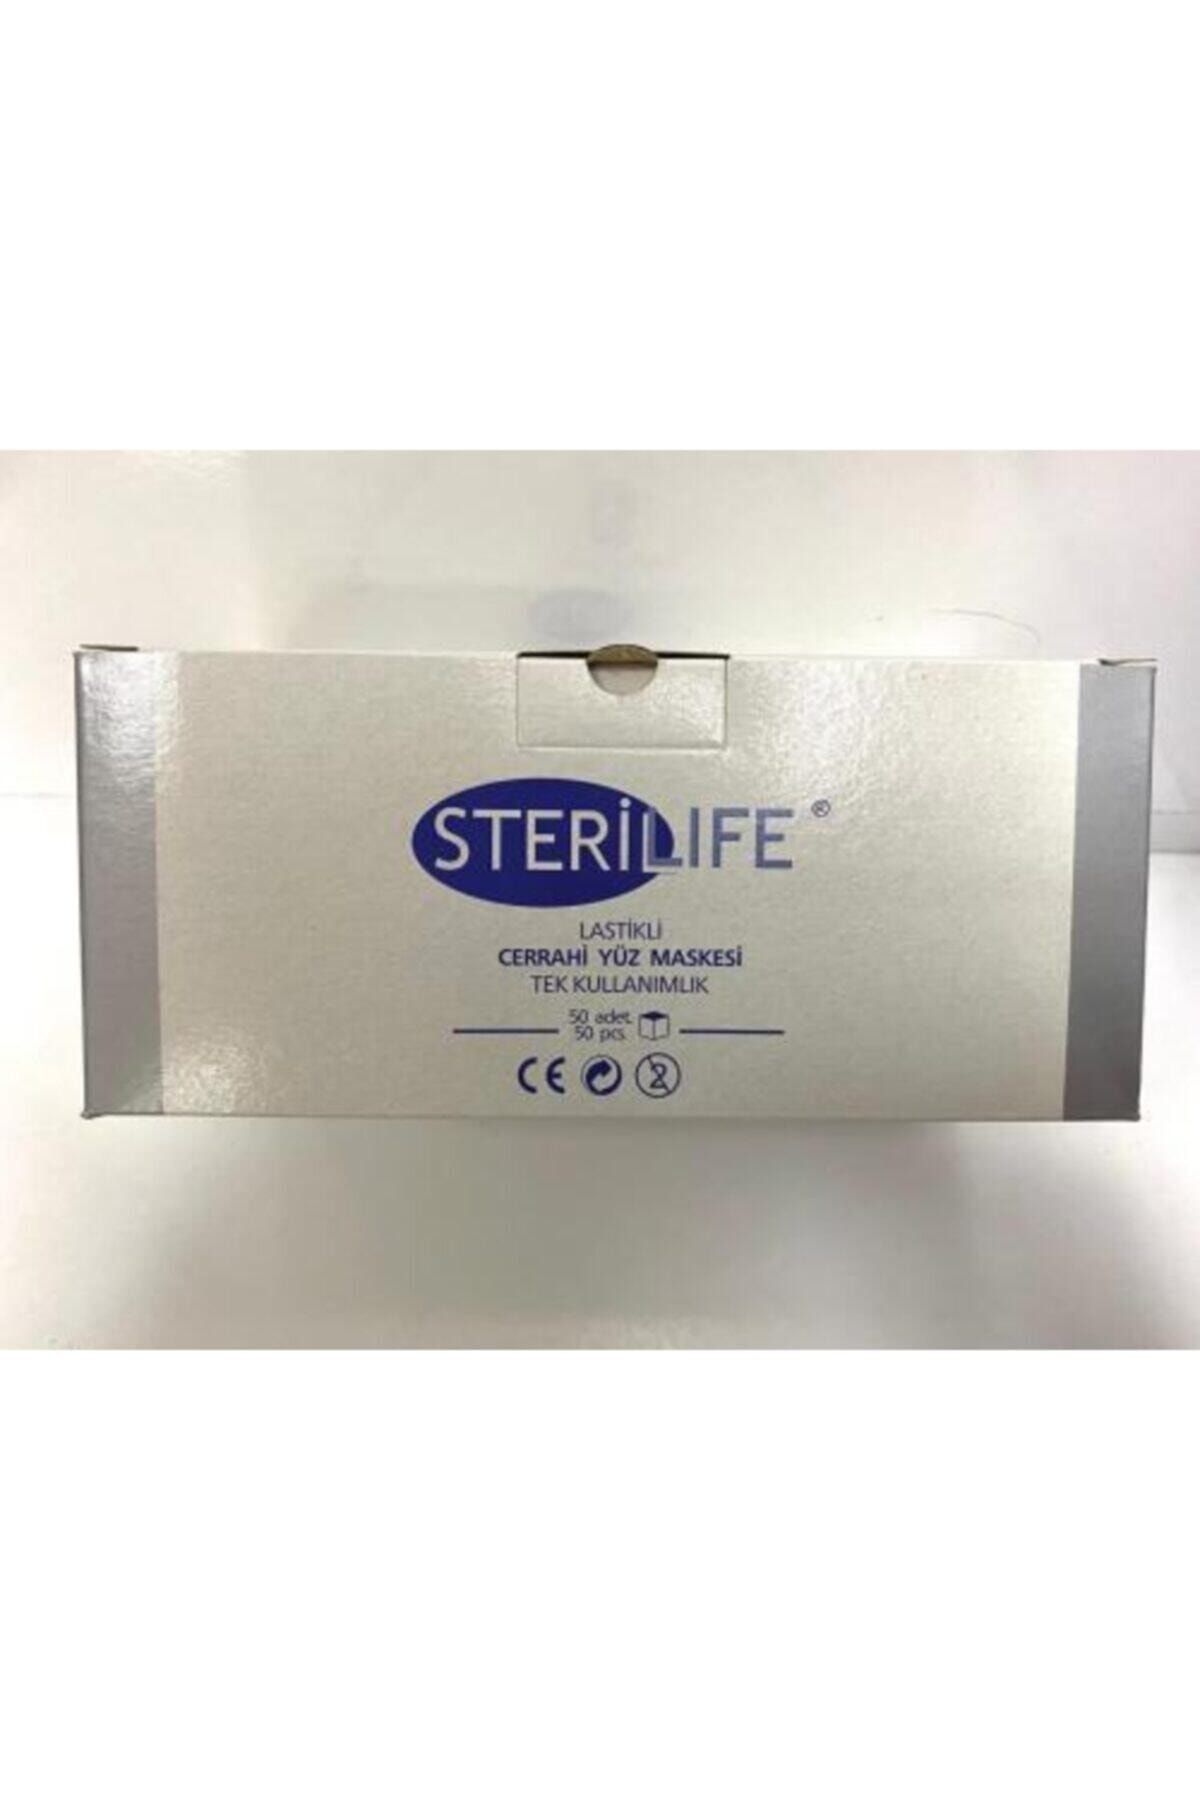 STERİLIFE Sterilife 3 Katlı Orta Katmanı Filtreli Ince Lastikli Cerrahi Yüz Maskesi 50 Adet / Paket Mavi Ren